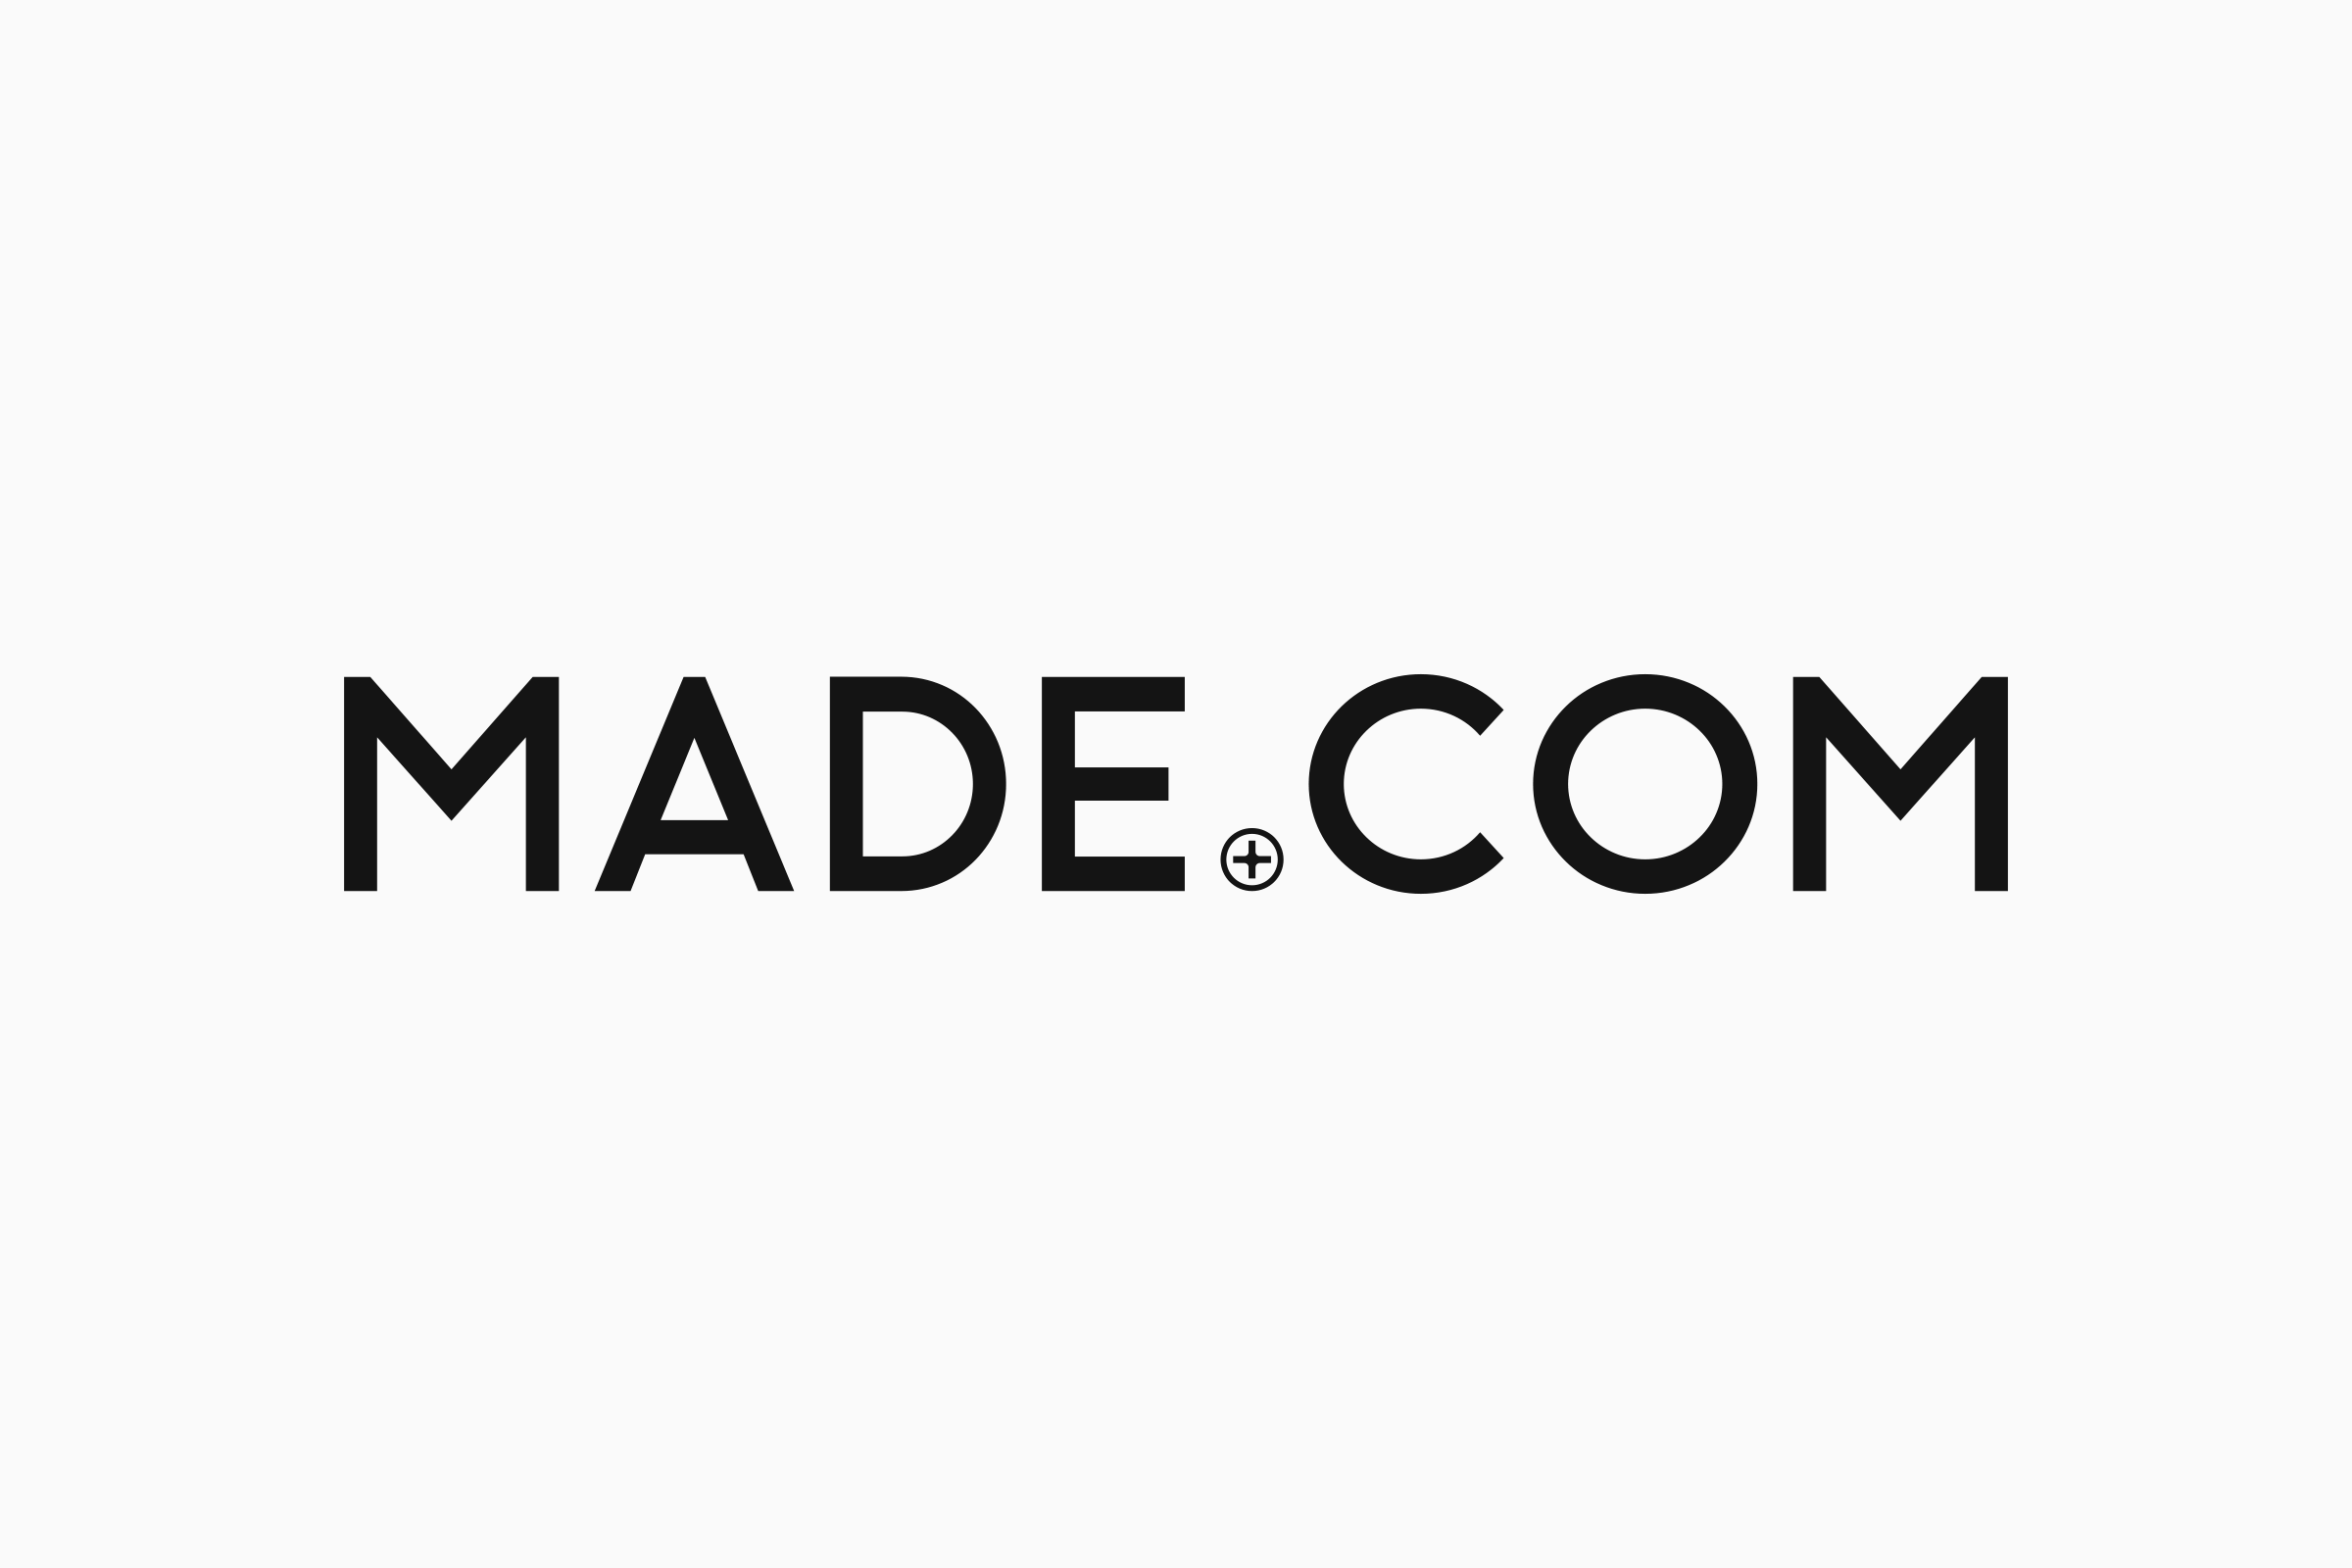 Made.com Logo - Studio.Build — Made.com